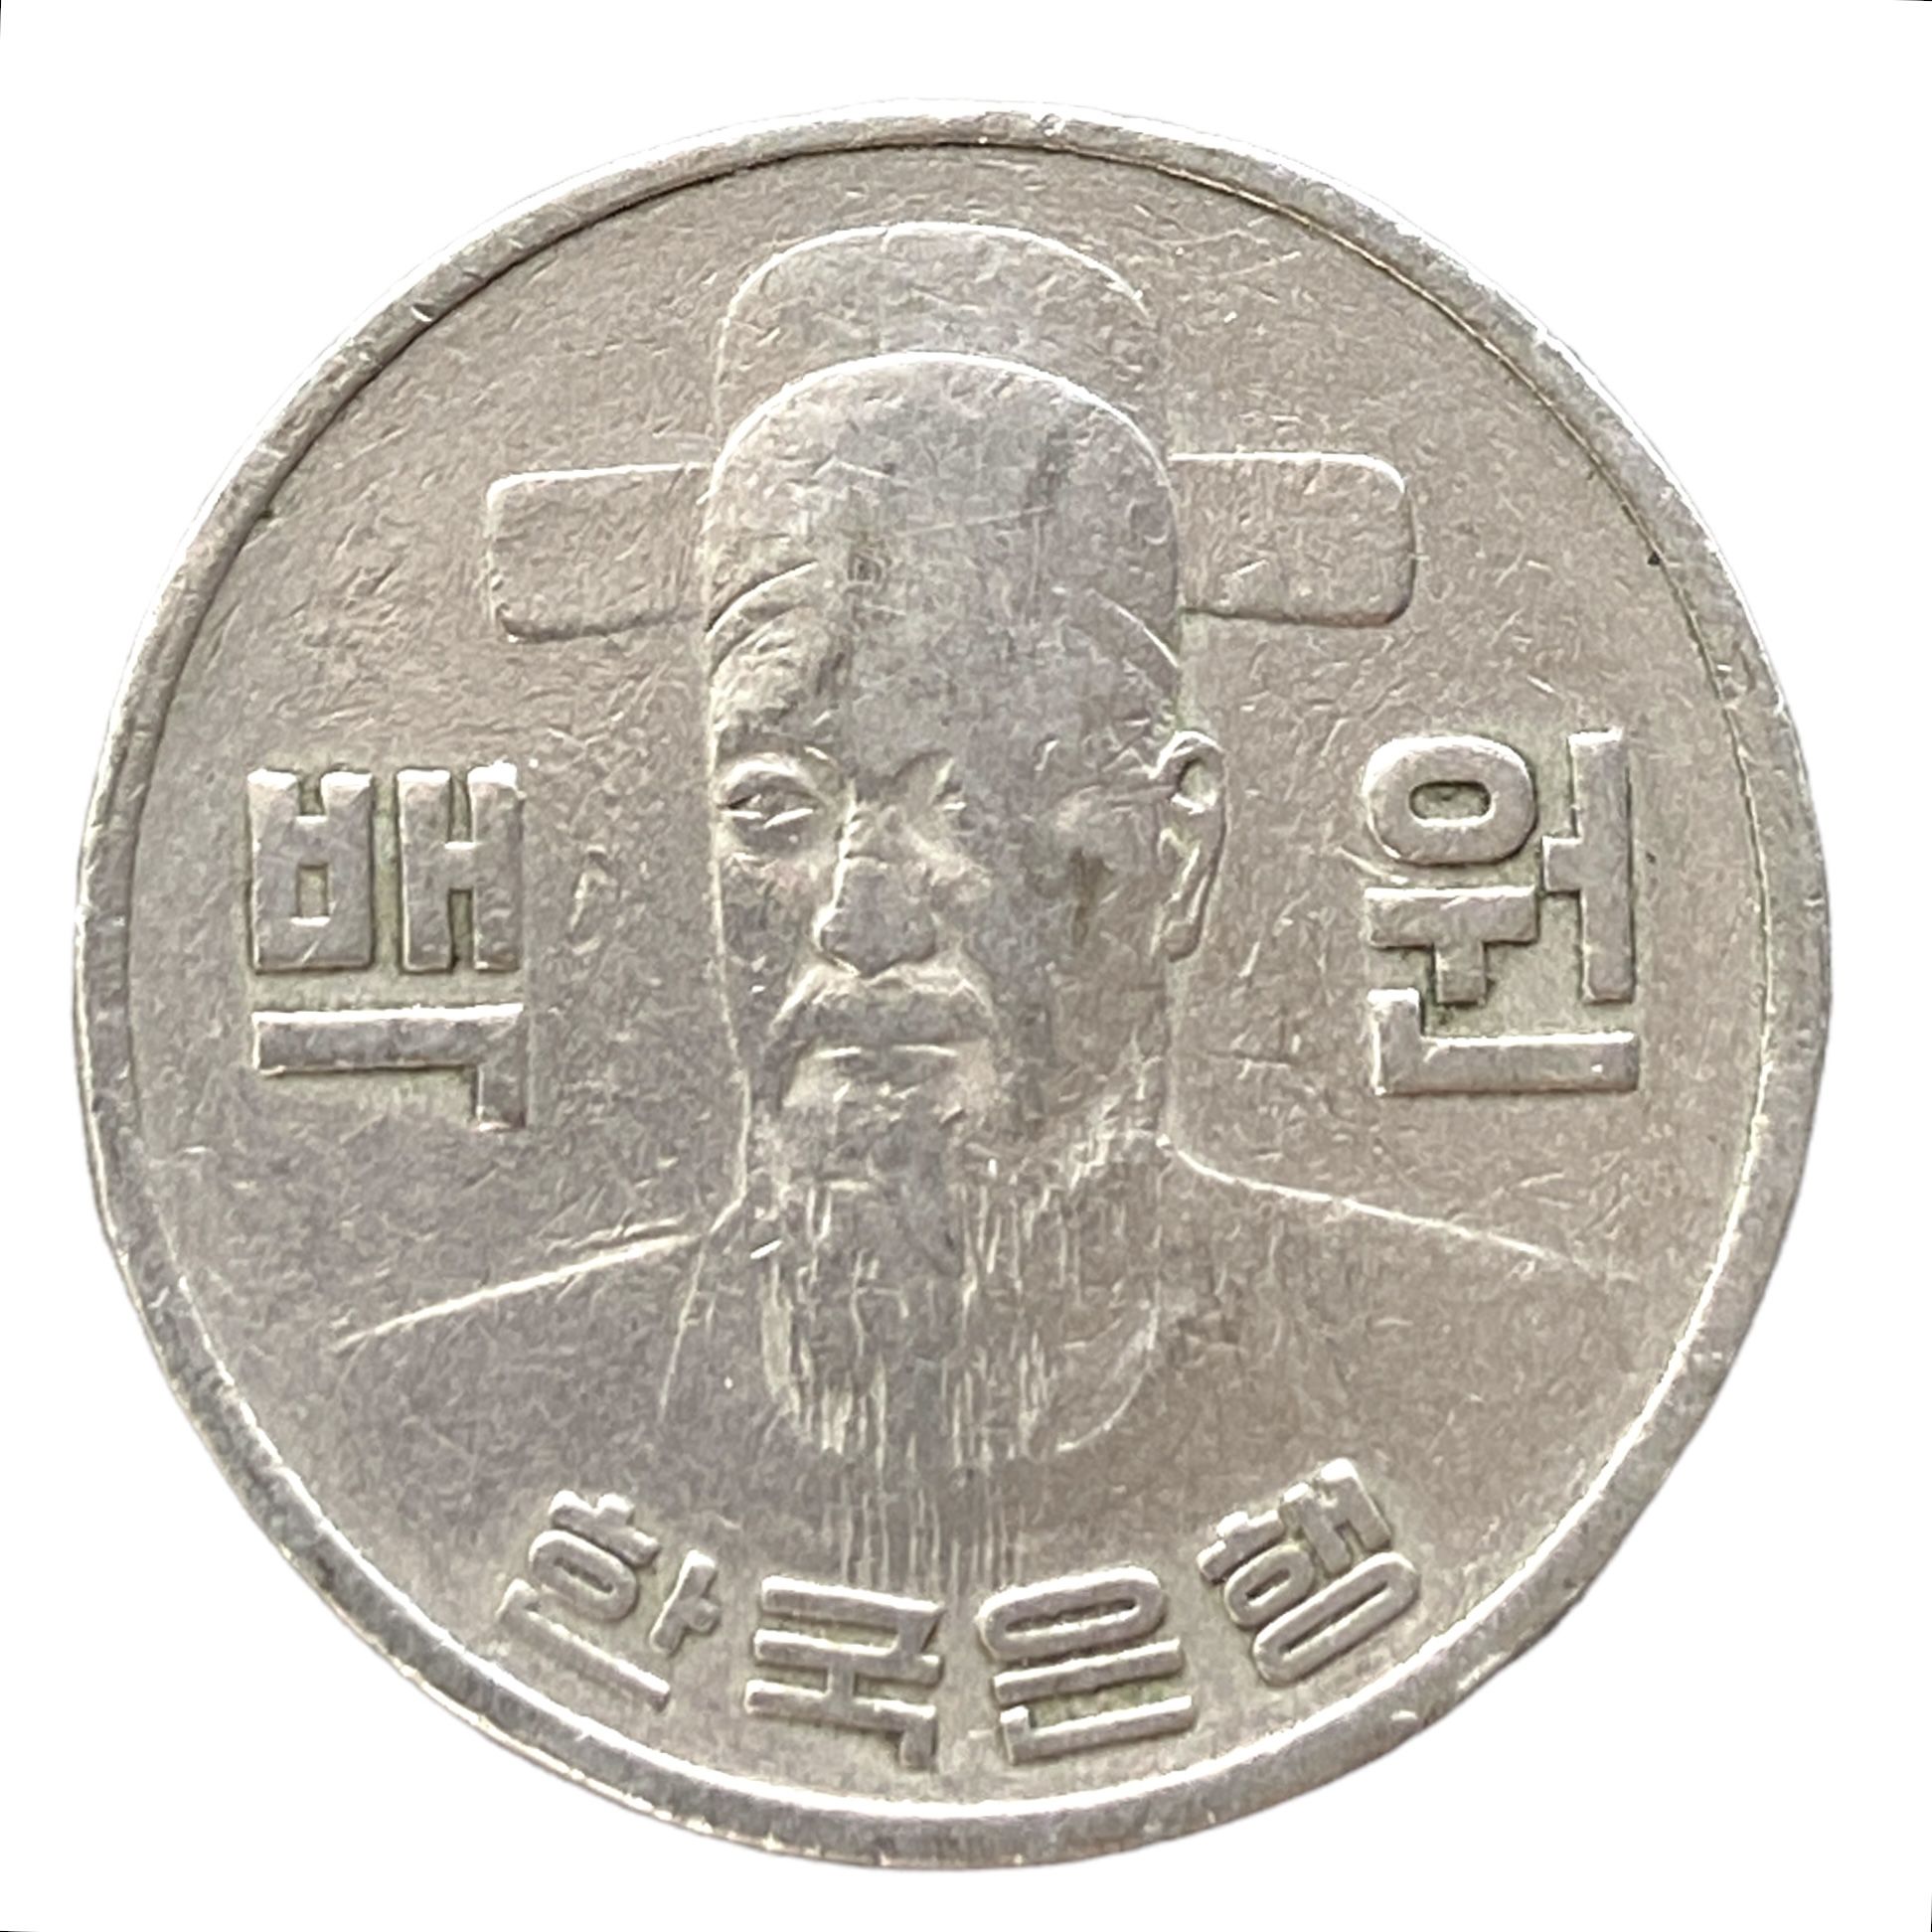 59000 вон в рублях. Монета Южной Кореи 100 вон. Монета Южной Кореи 100 вон ценность. Корейские монеты 100 вон. 100 Вон в рублях.